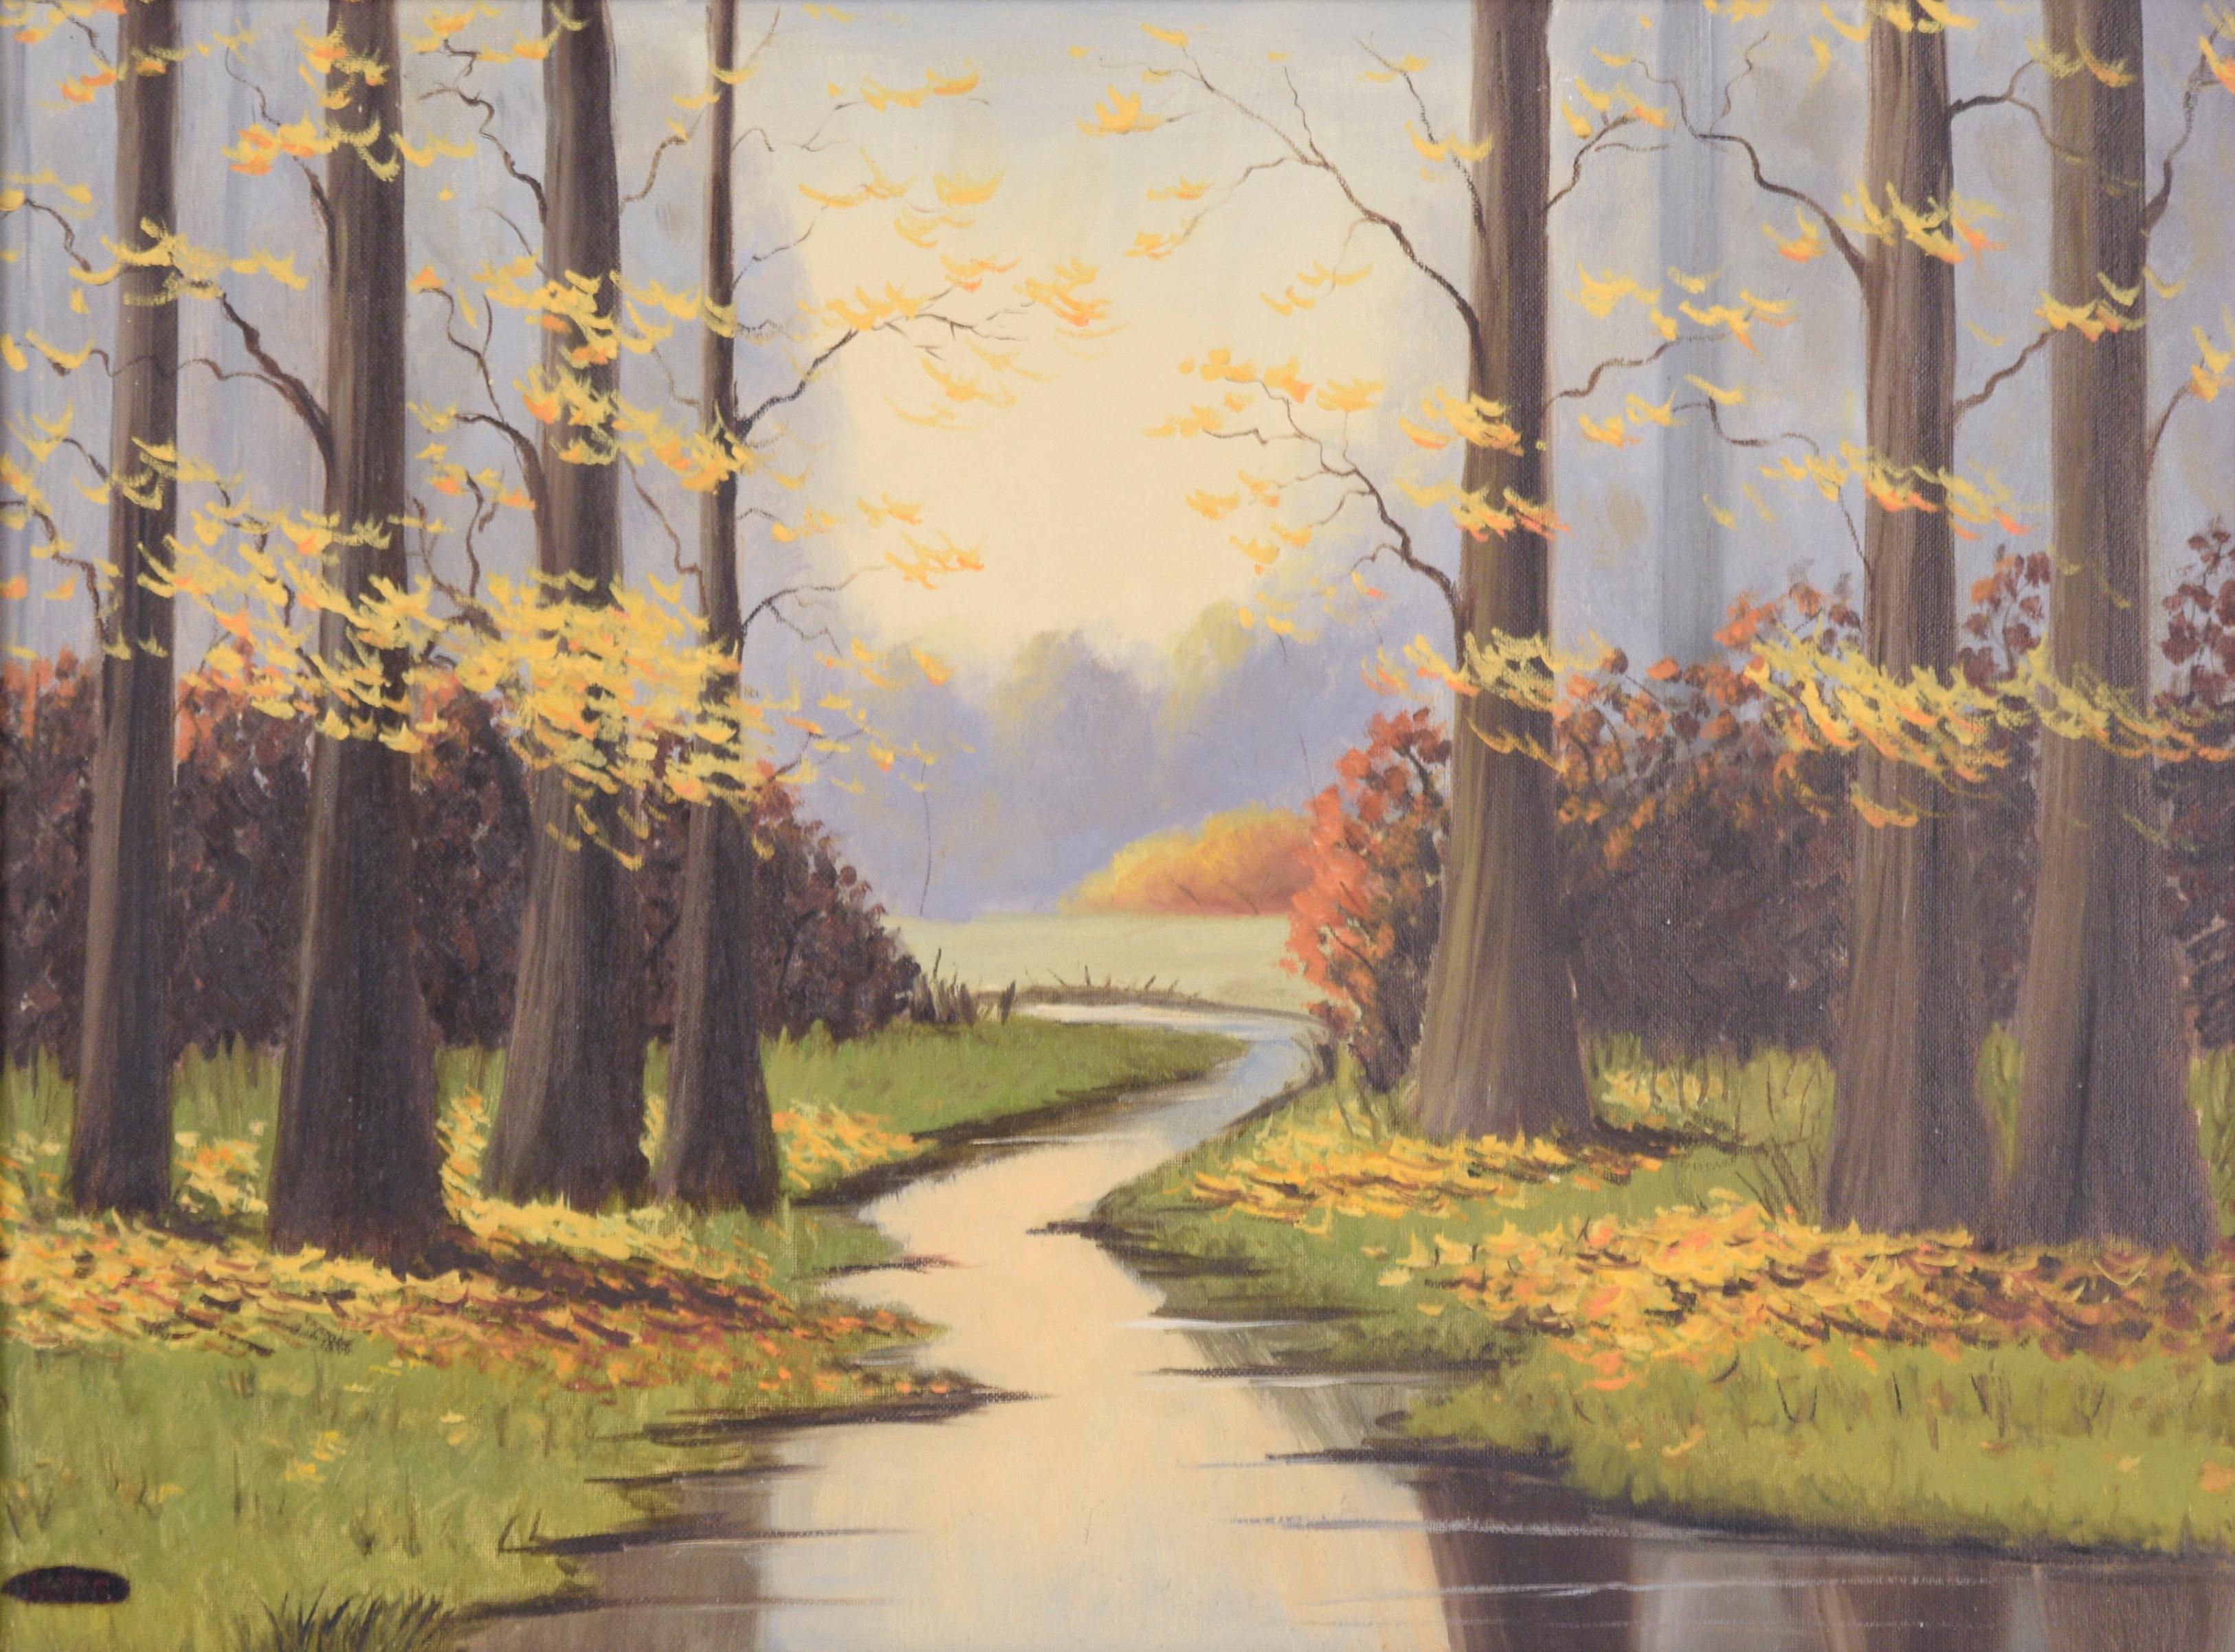 Fluss im Herbst - Landschaft – Painting von Lylia T. Shackelford